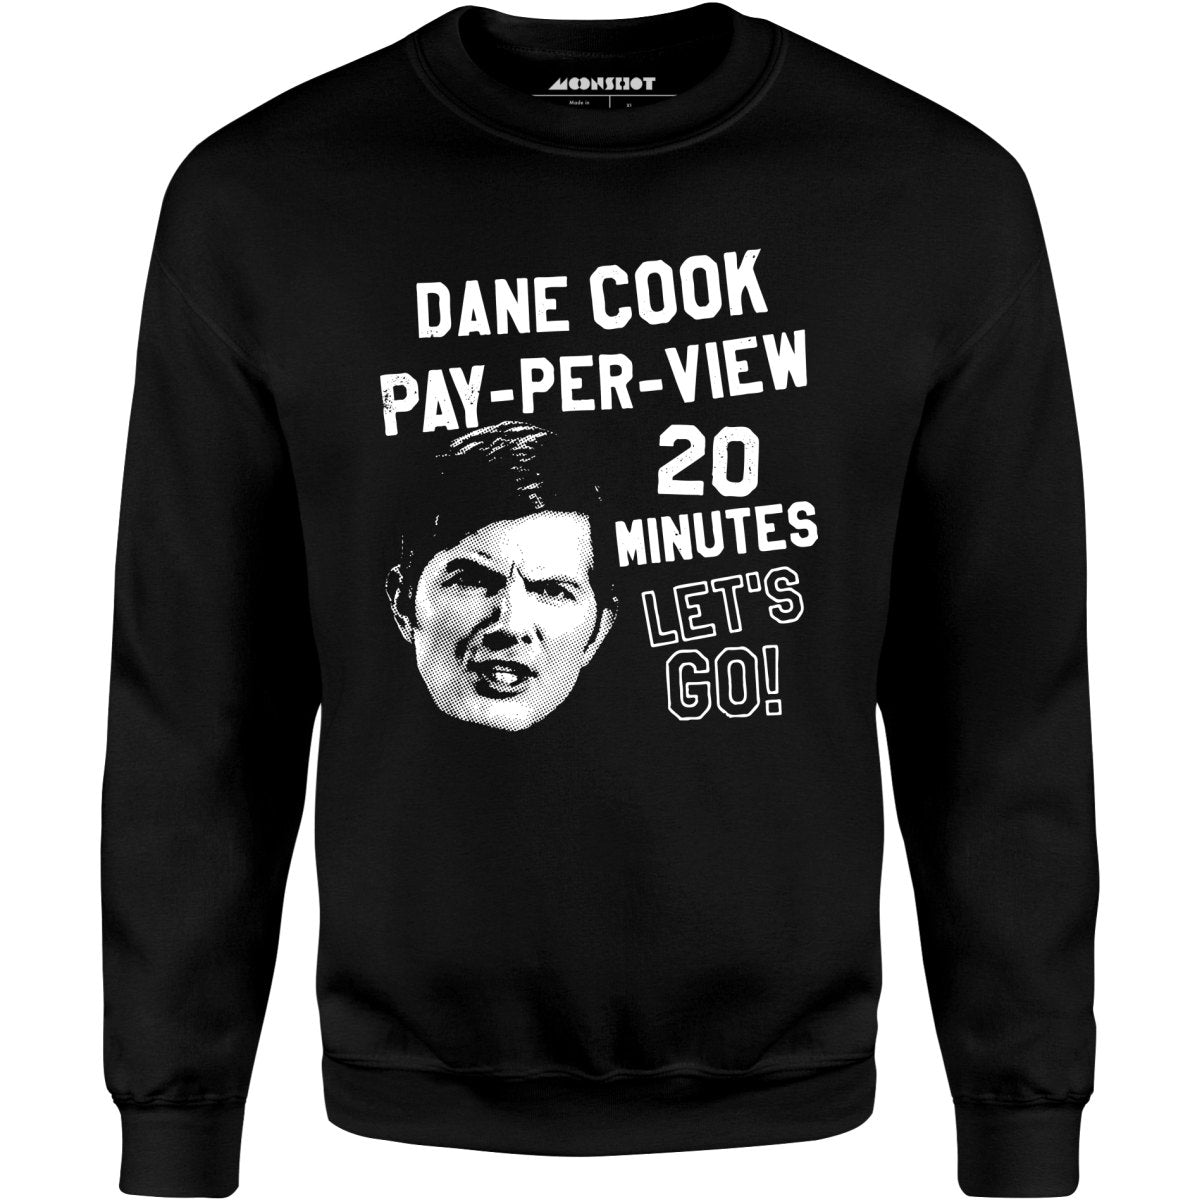 Dane Cook Pay-Per-View 20 Minutes Let's Go - Unisex Sweatshirt